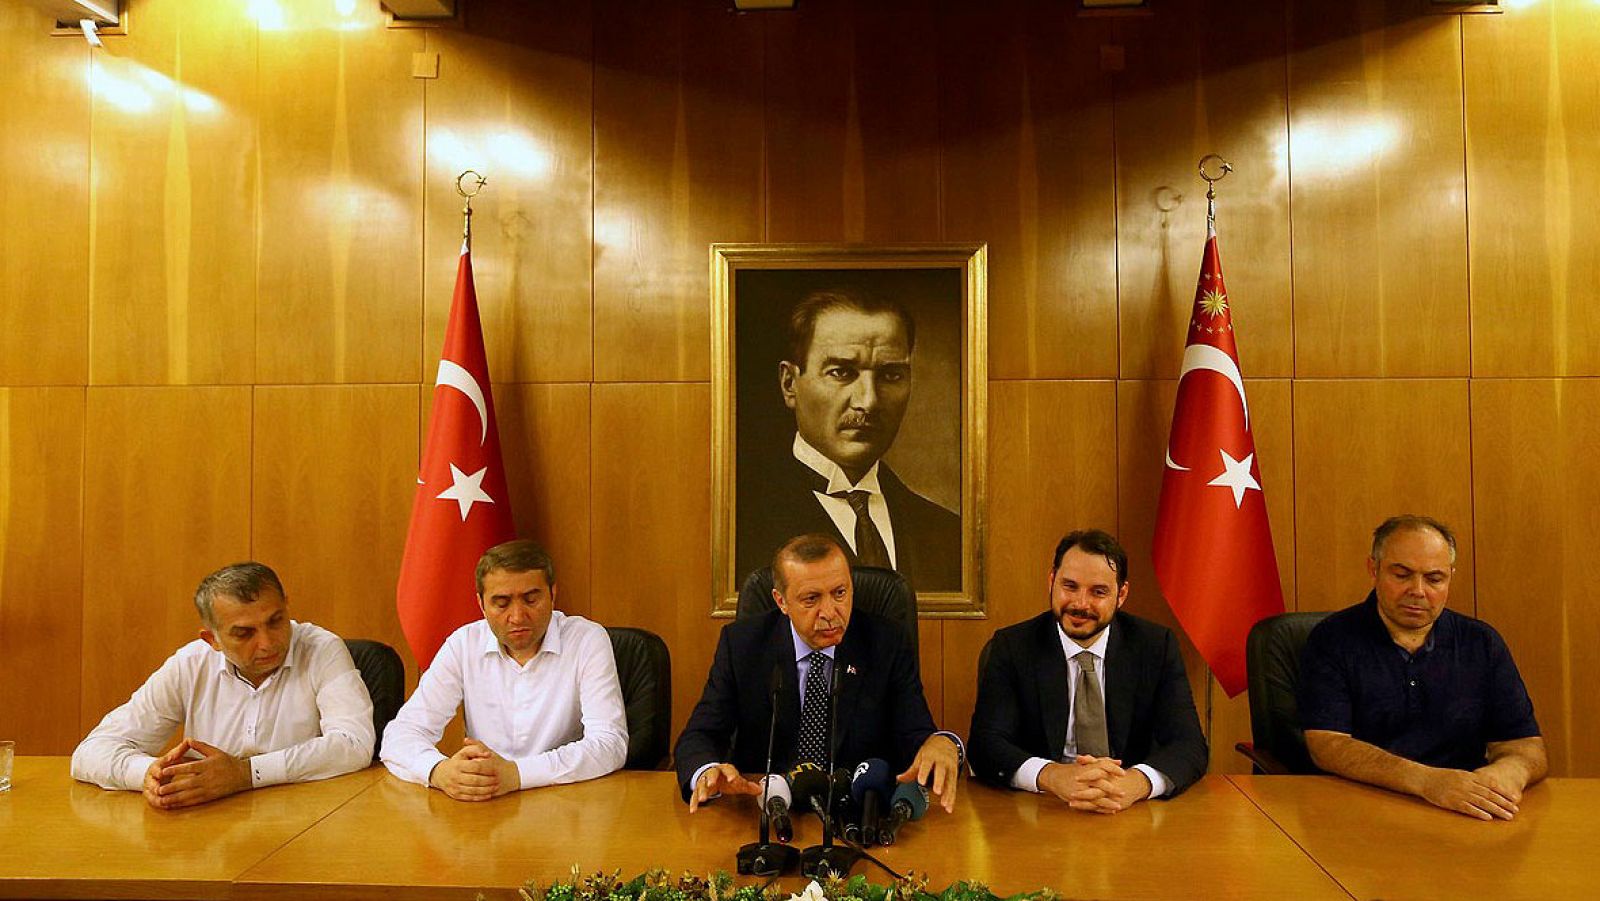 El presidente turco, Recep Tayyip Erdogan, durante la comparecencia en el aeropuerto de Atatürk, en Estambul, tras el intento de golpe de Estado, el 16 de julio de 2016 REUTERS/Huseyin Aldemir